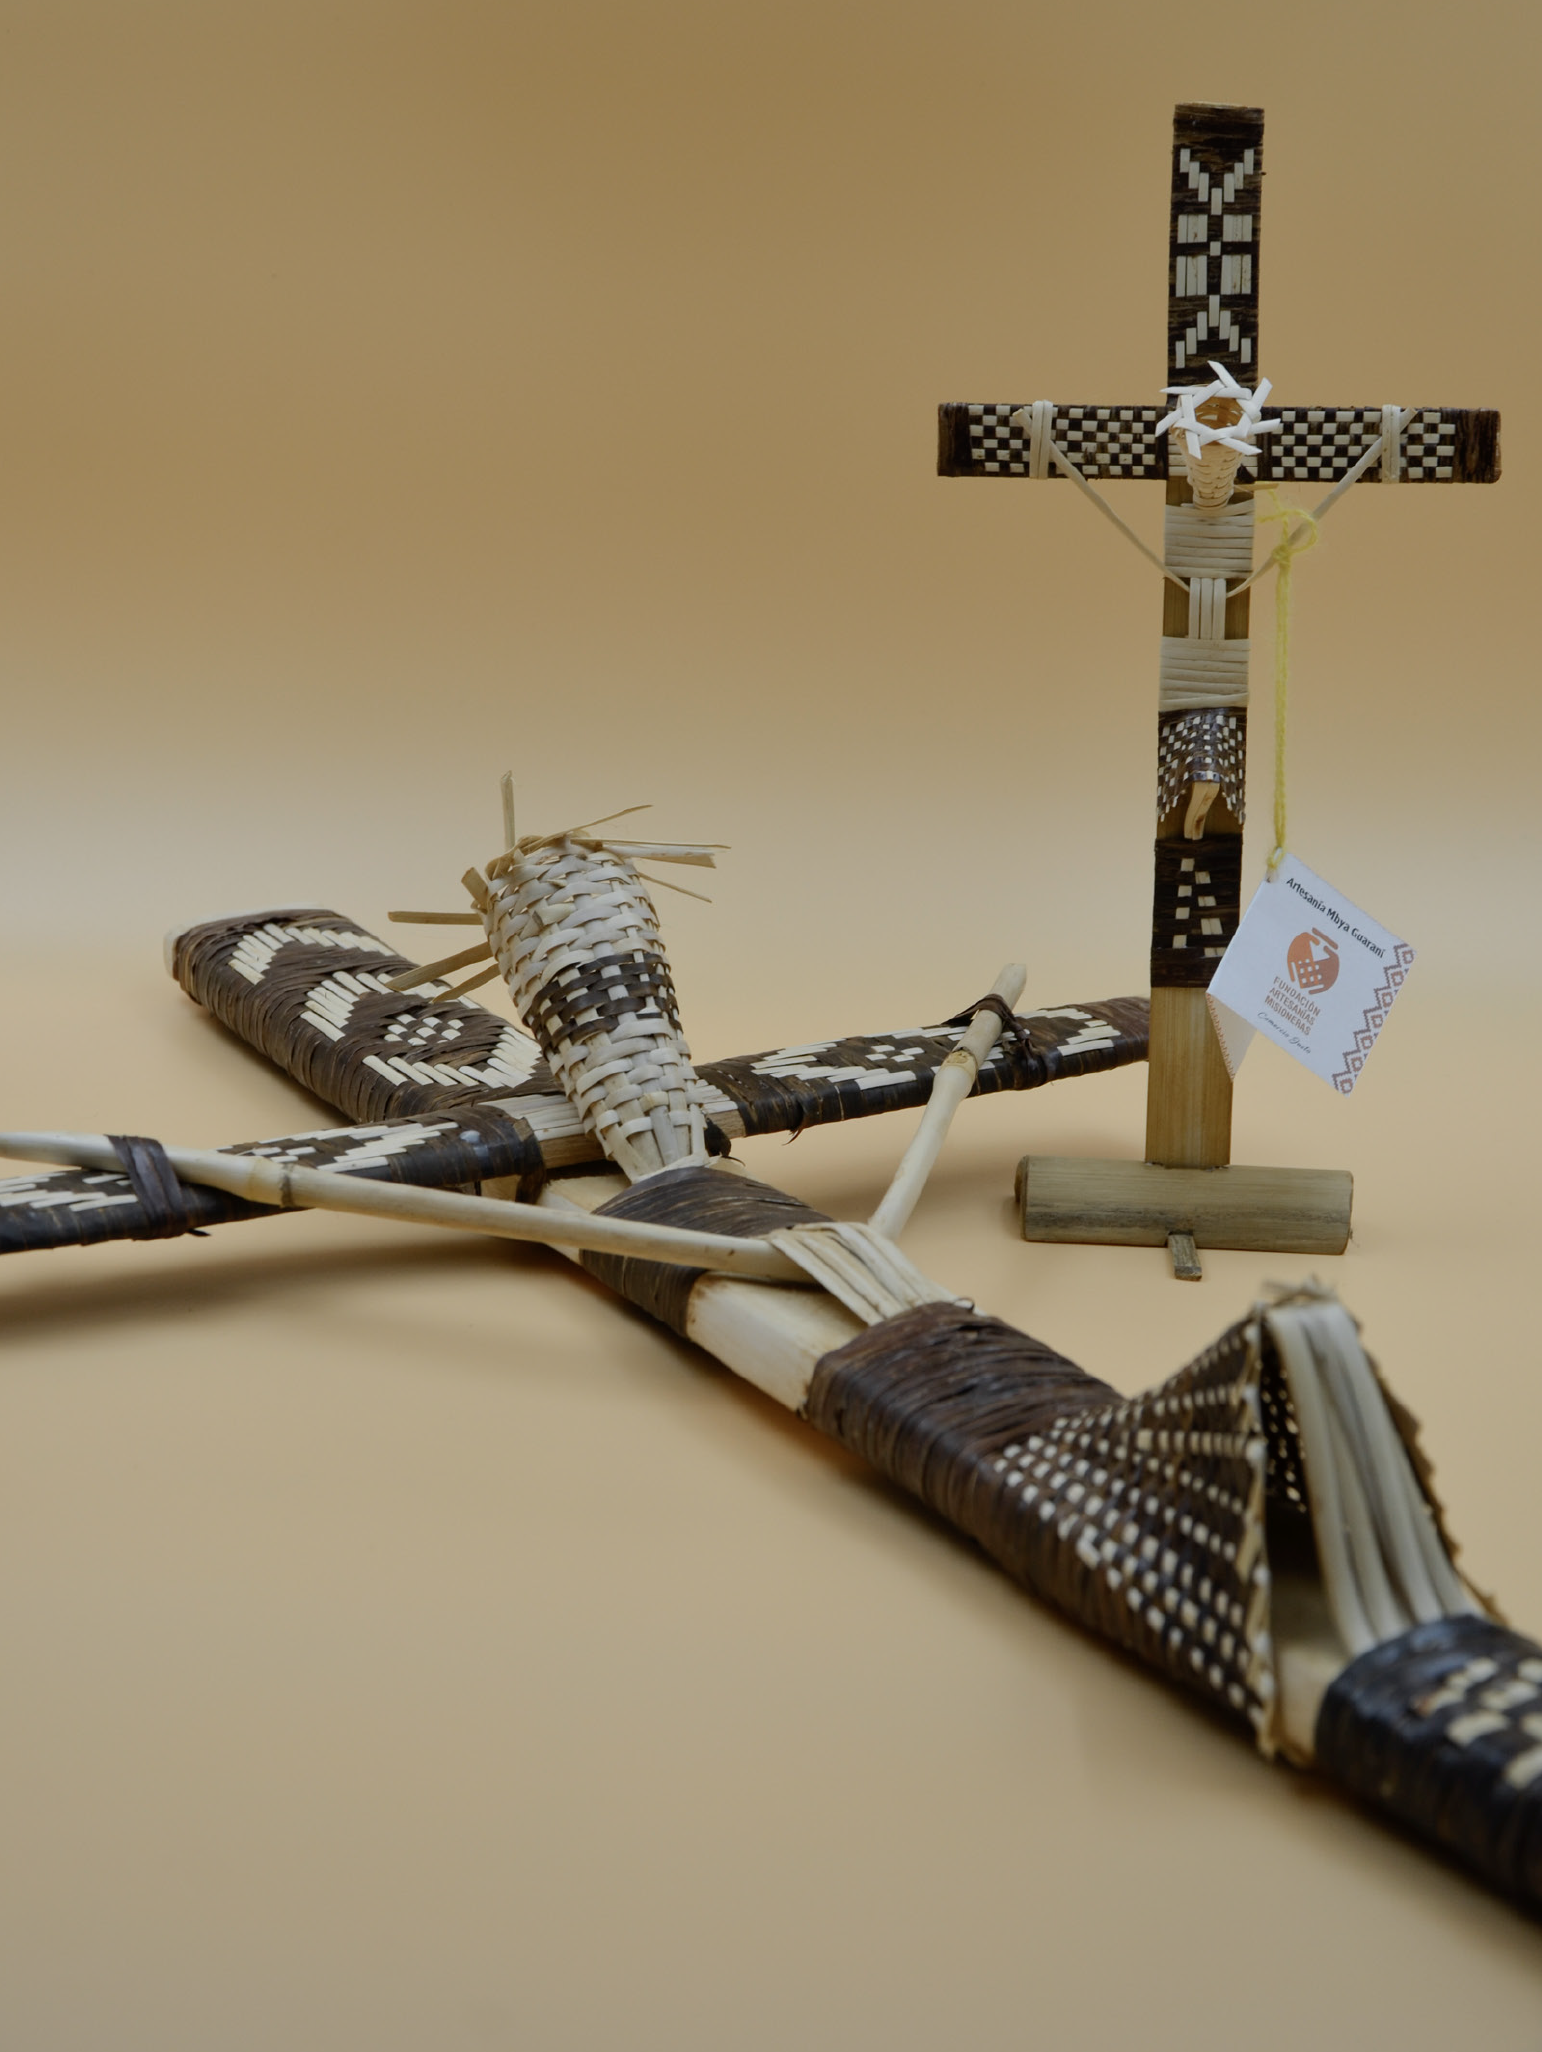 Cruces, una simbología de Cristo en la cruz elaborada con tacuara y ñandeta (tipo de tacuara flexible) revestido
en tejido de tacuarembó y guembepy. (Artesano: Lorenzo Duarte, de la comunidad Santa Ana Poty,
en Santa Ana).